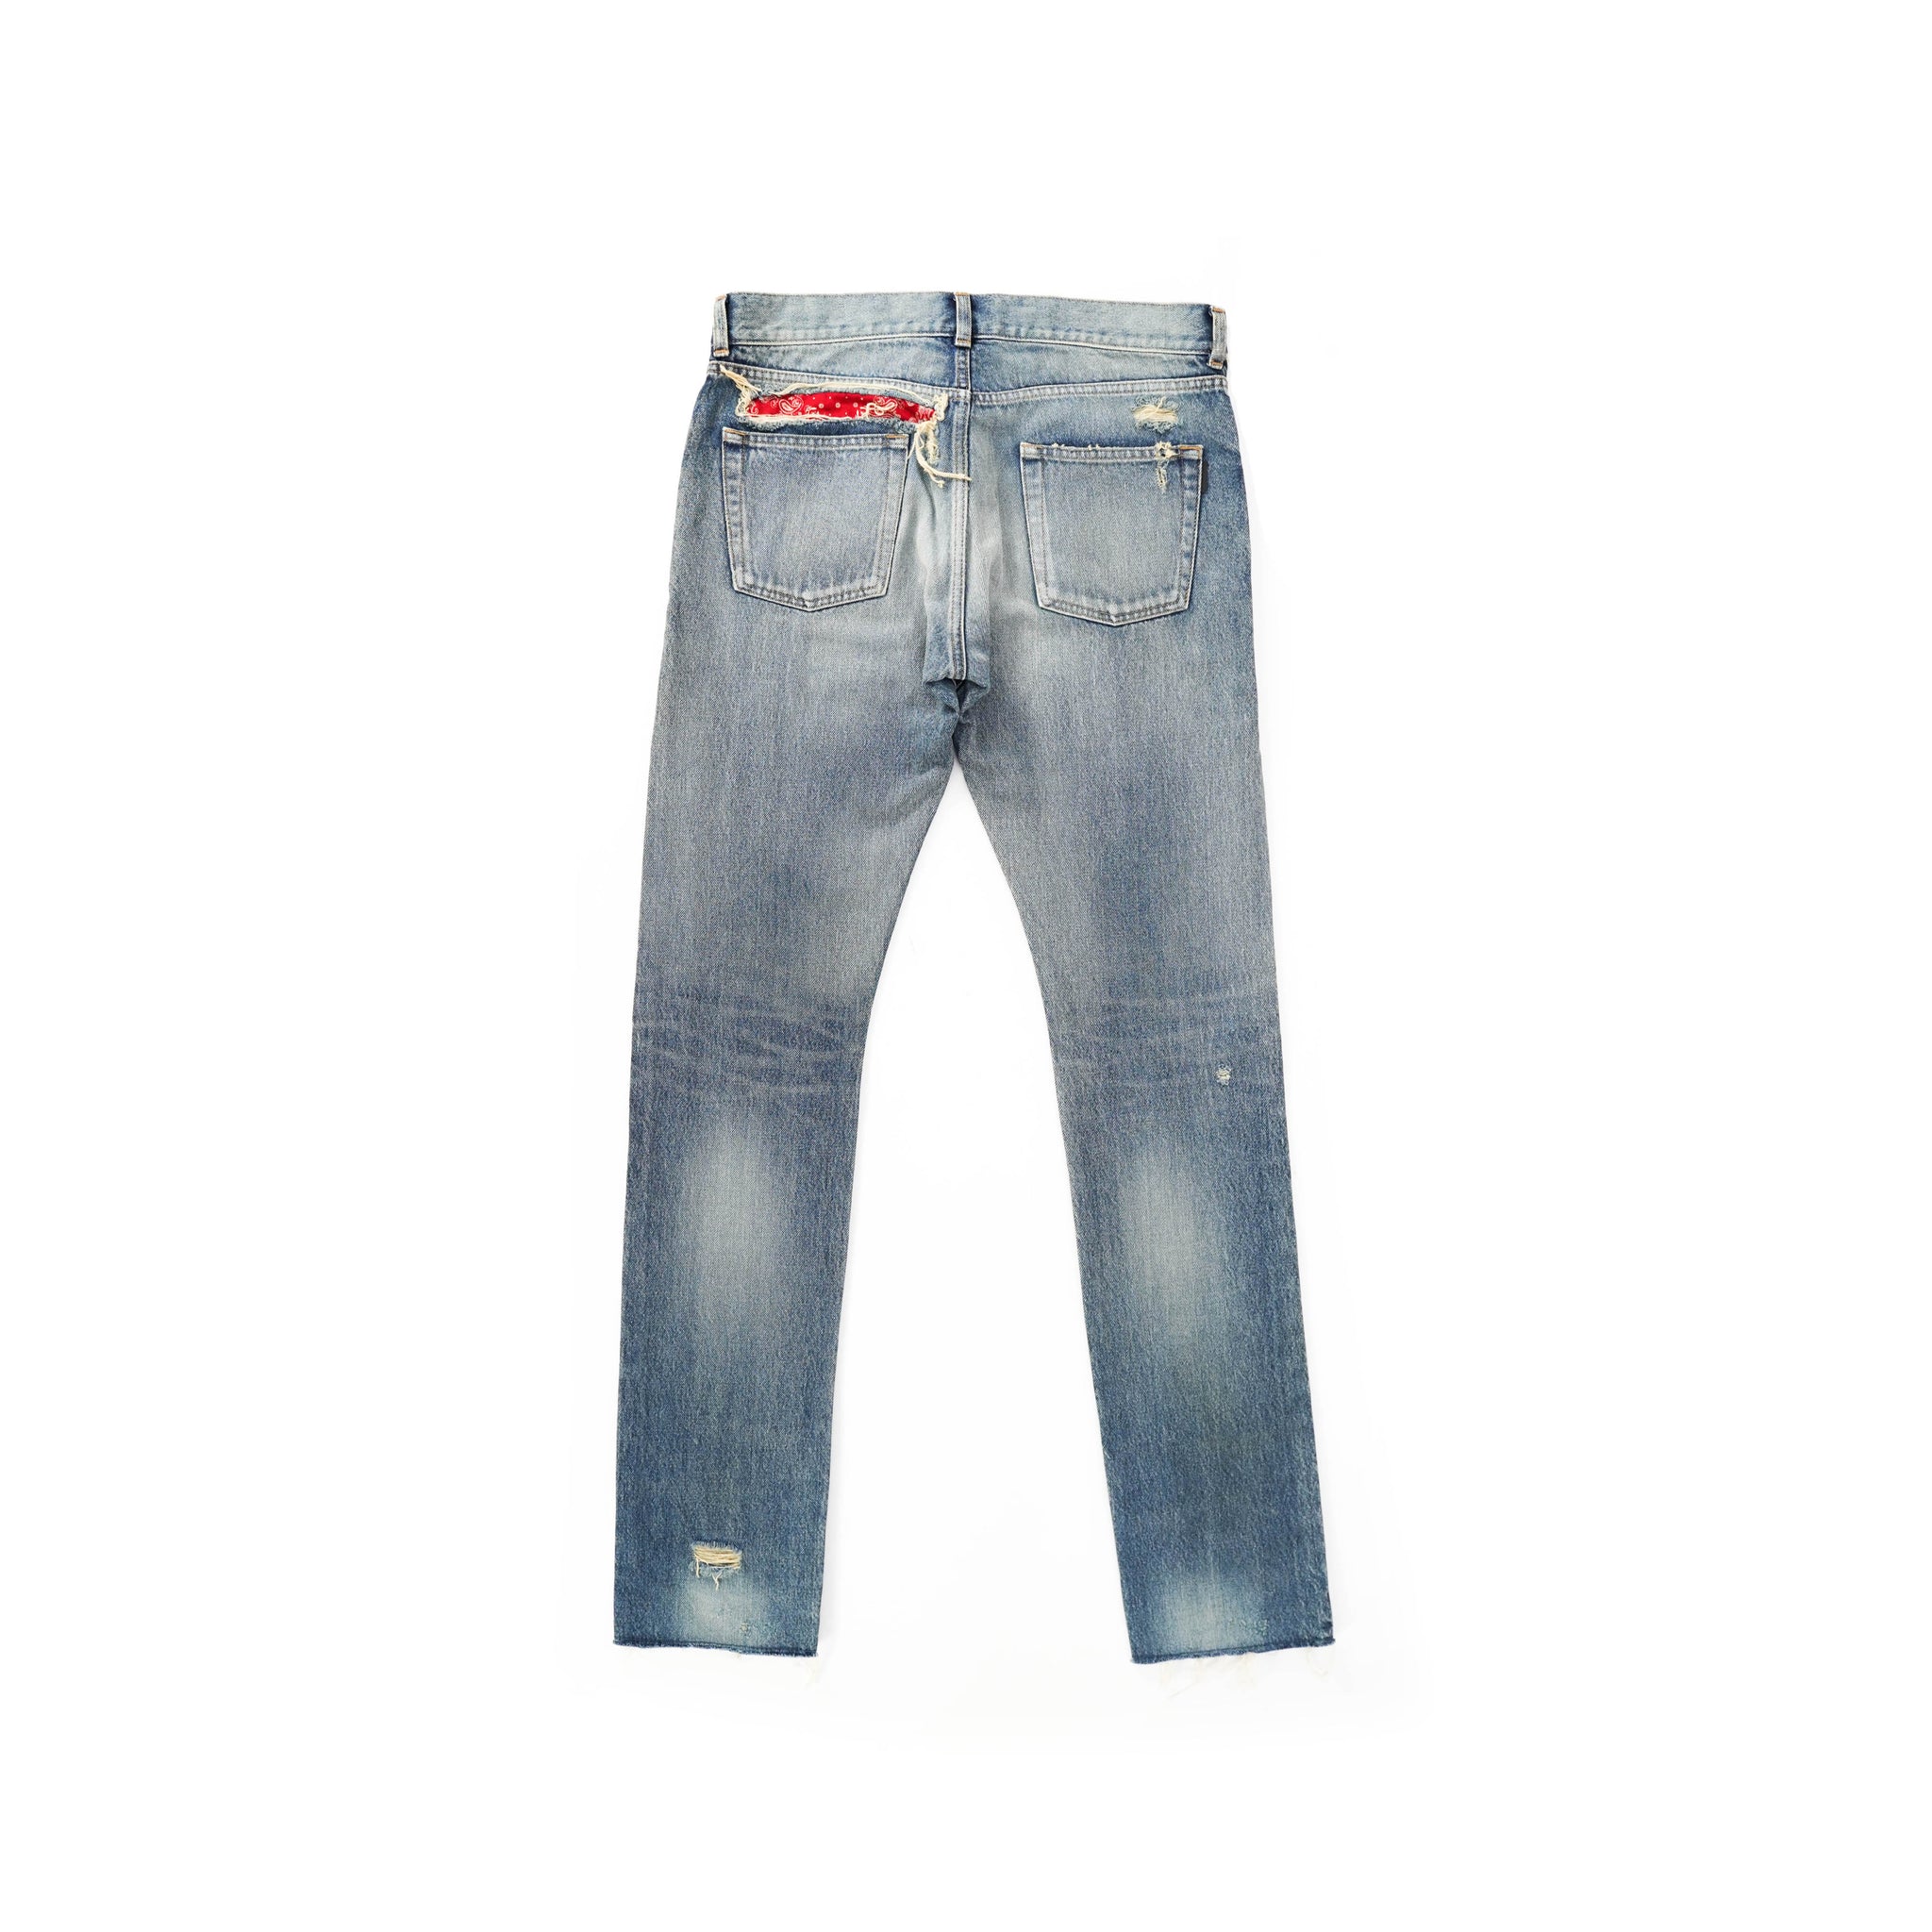 Distressed Bandana Jeans – Backyardarchive